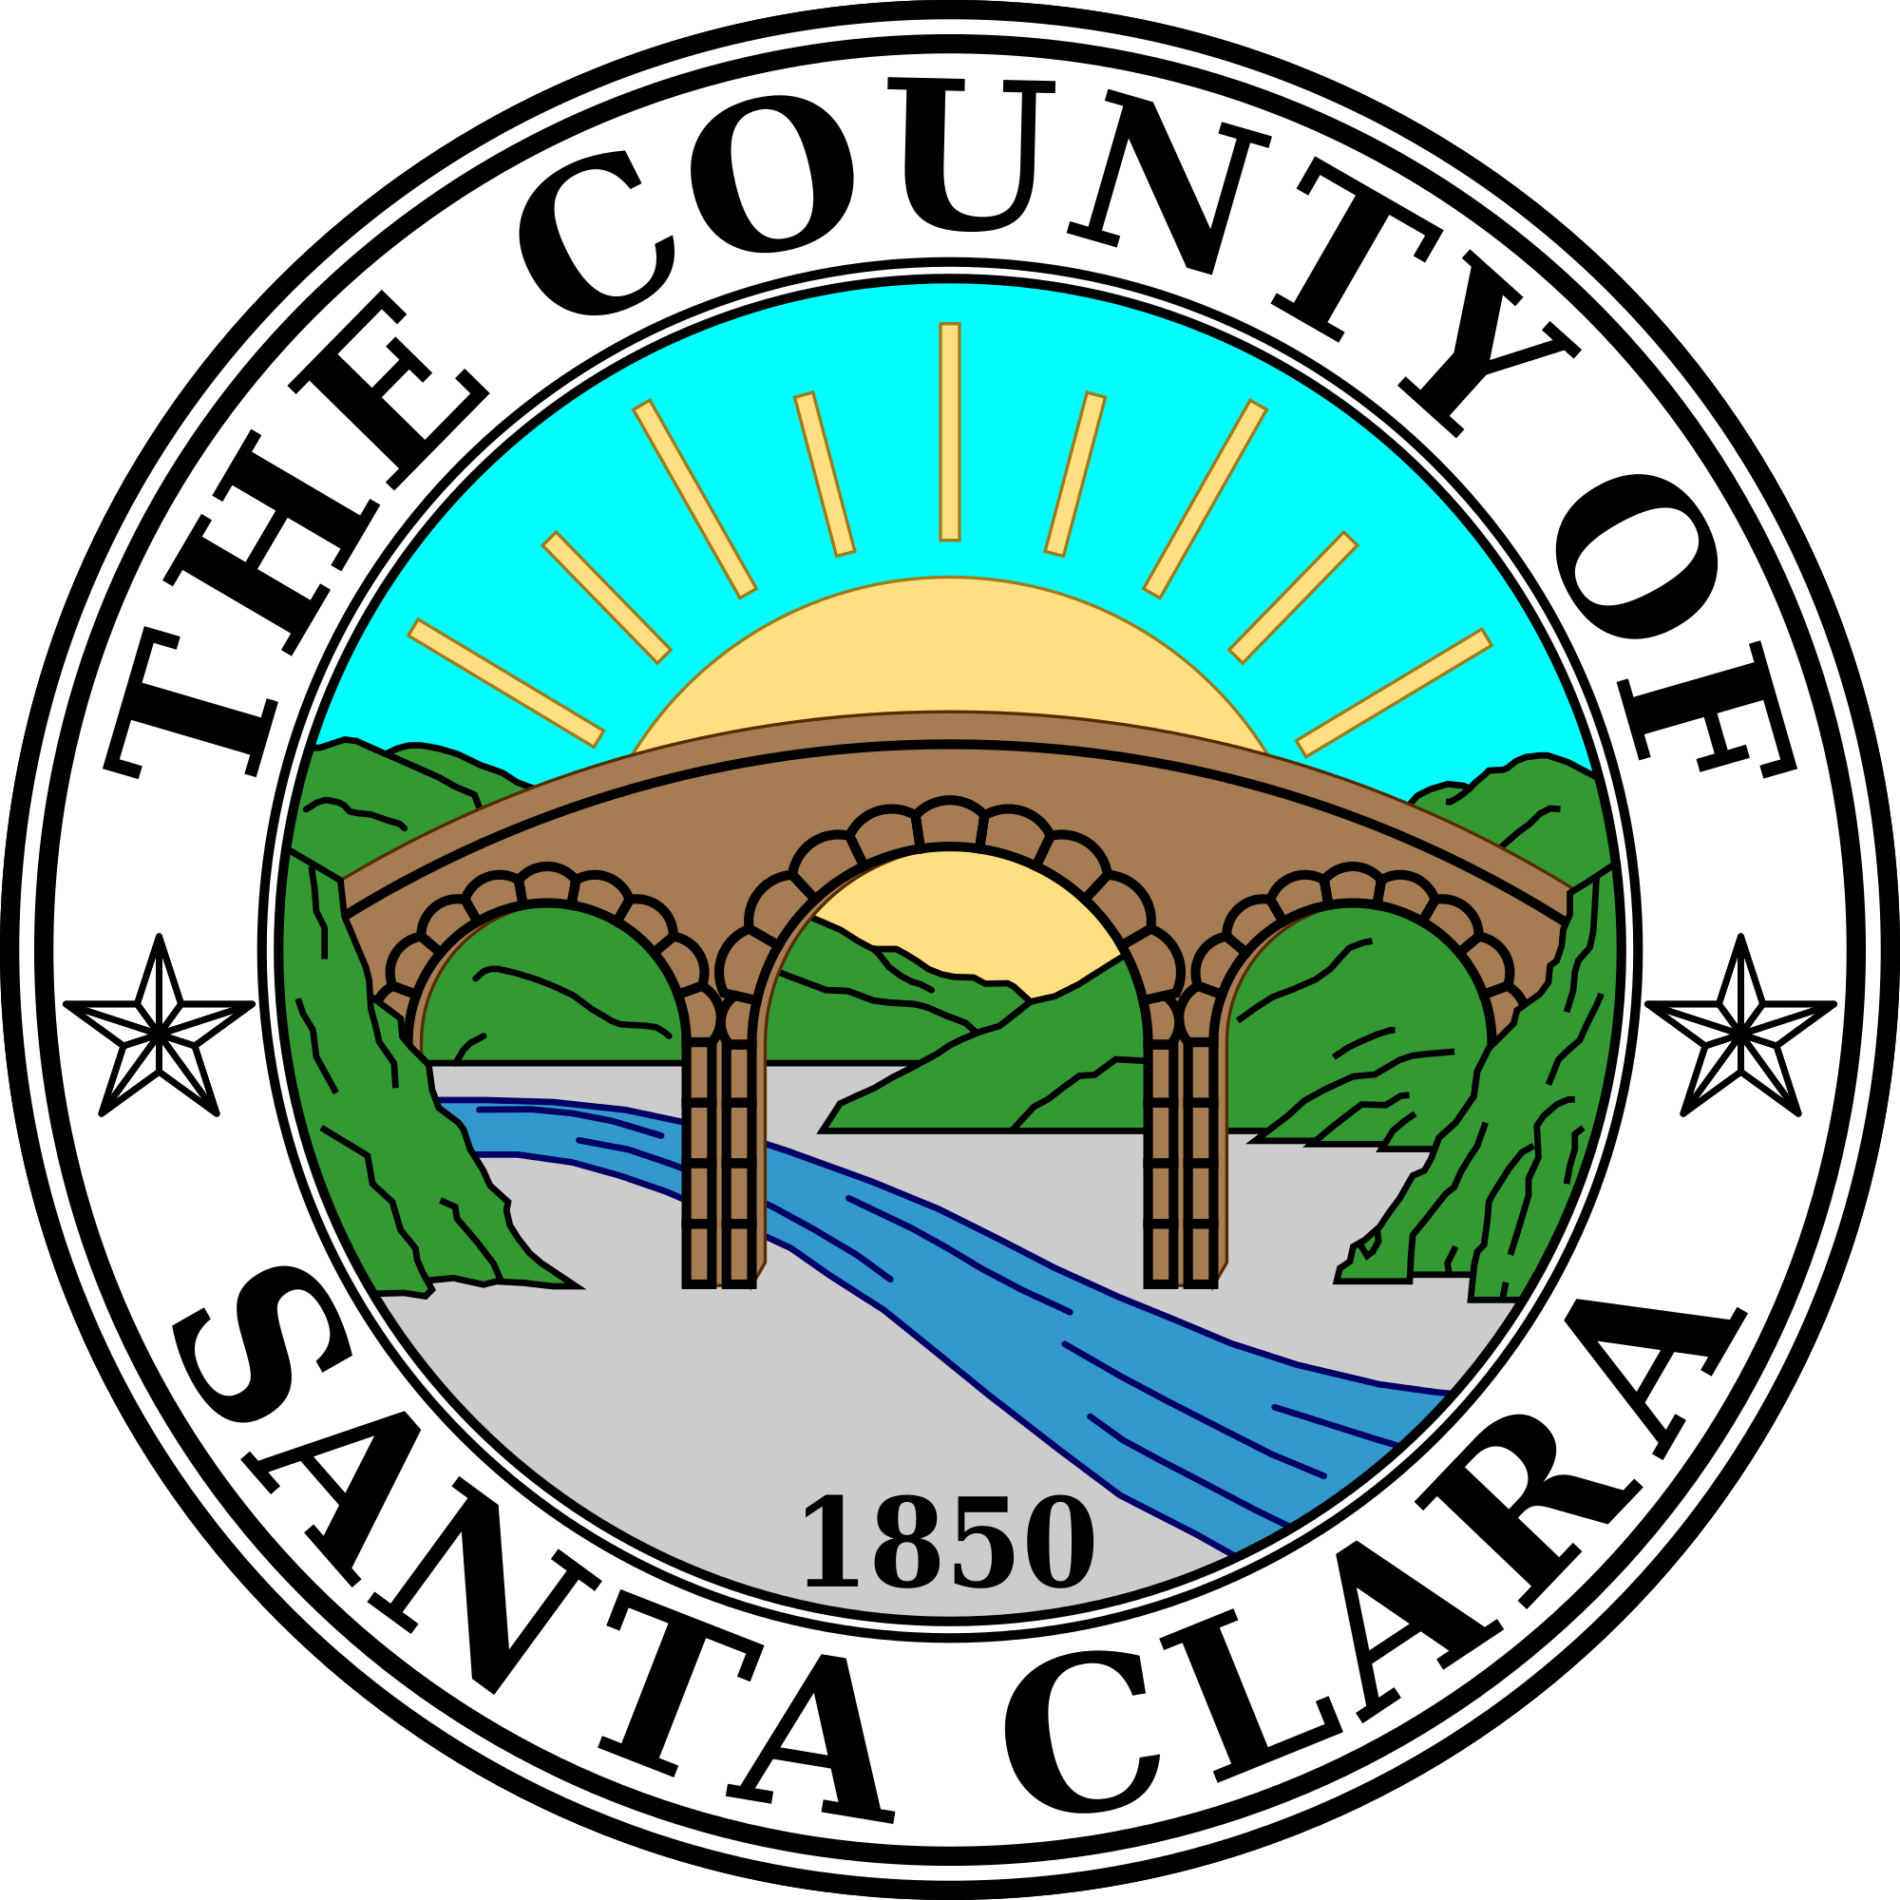 County-of-Santa-Clara-logo-1900x1900.png